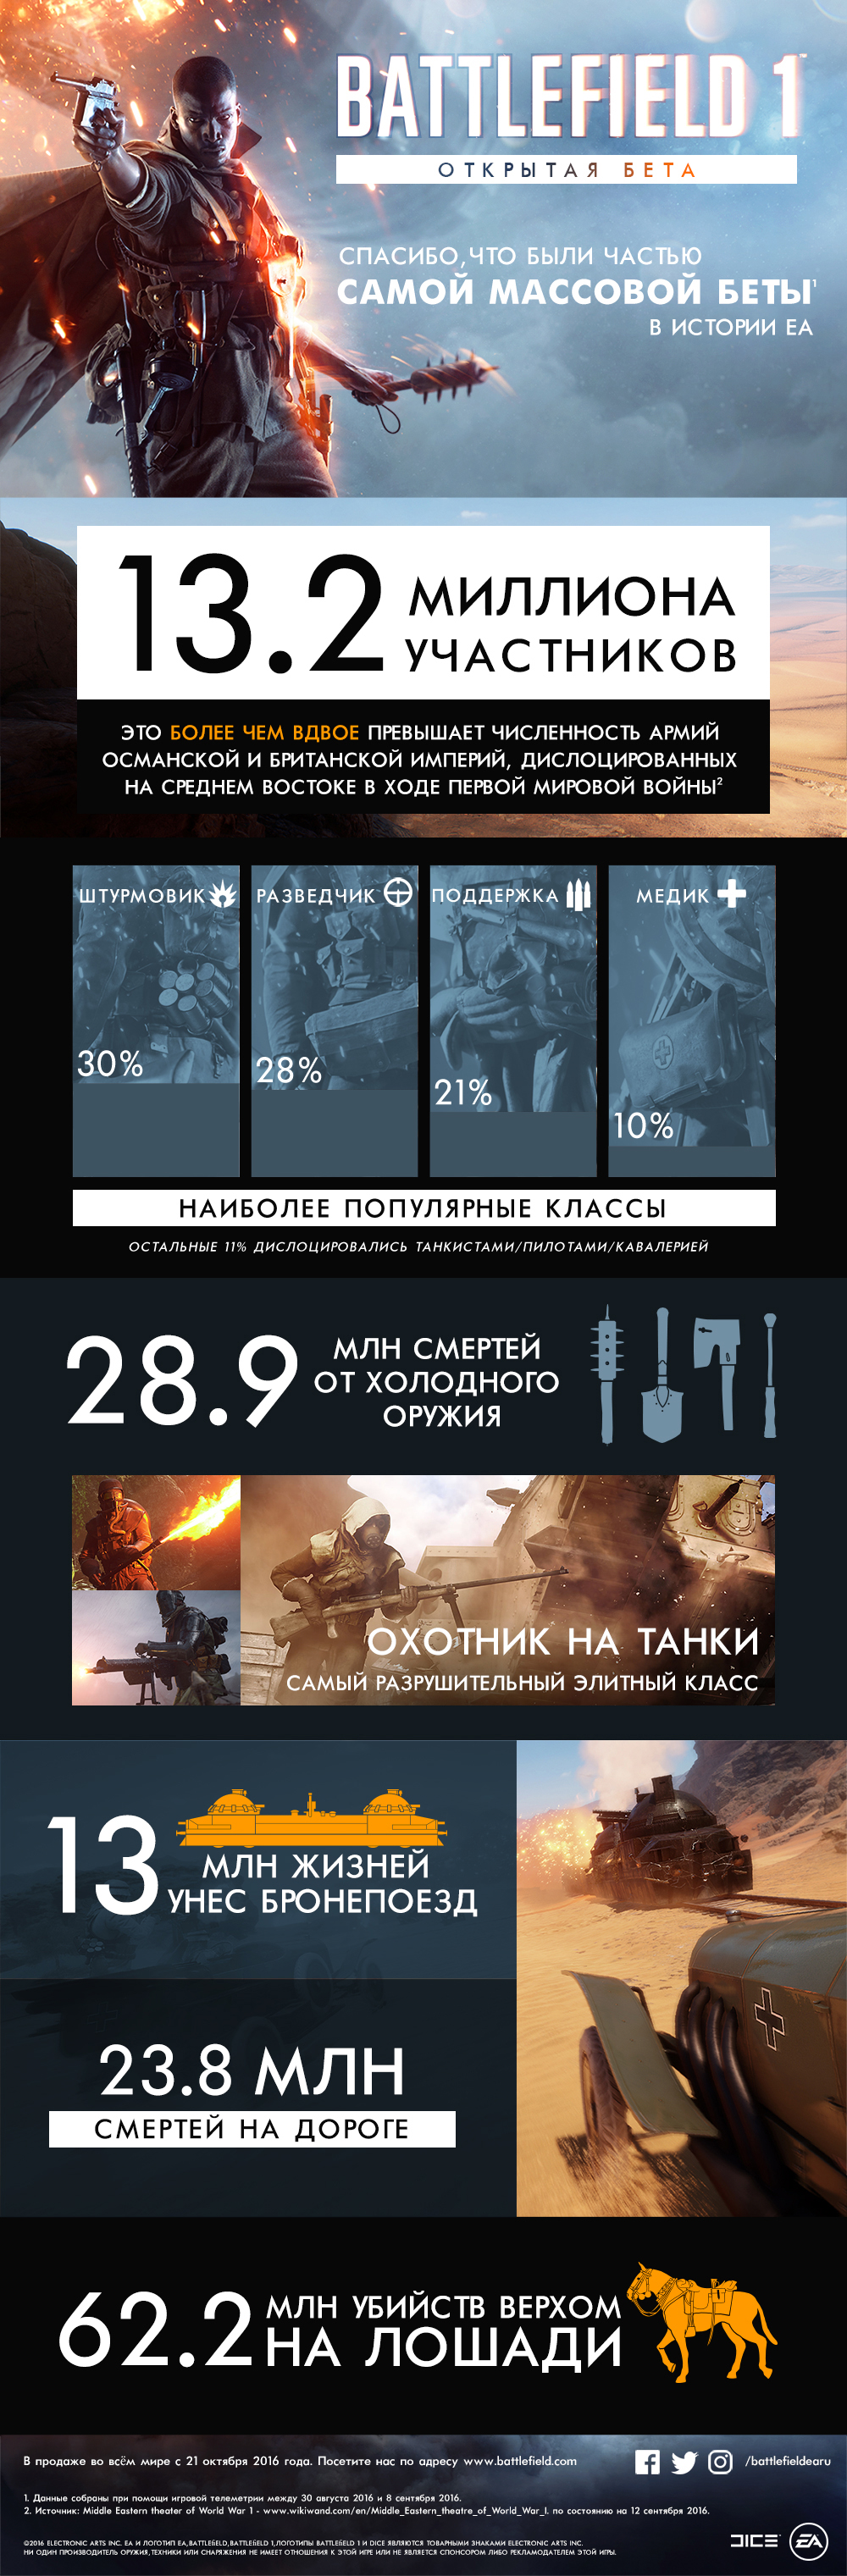 170694_pty6luevsl_beta_infographic_rus